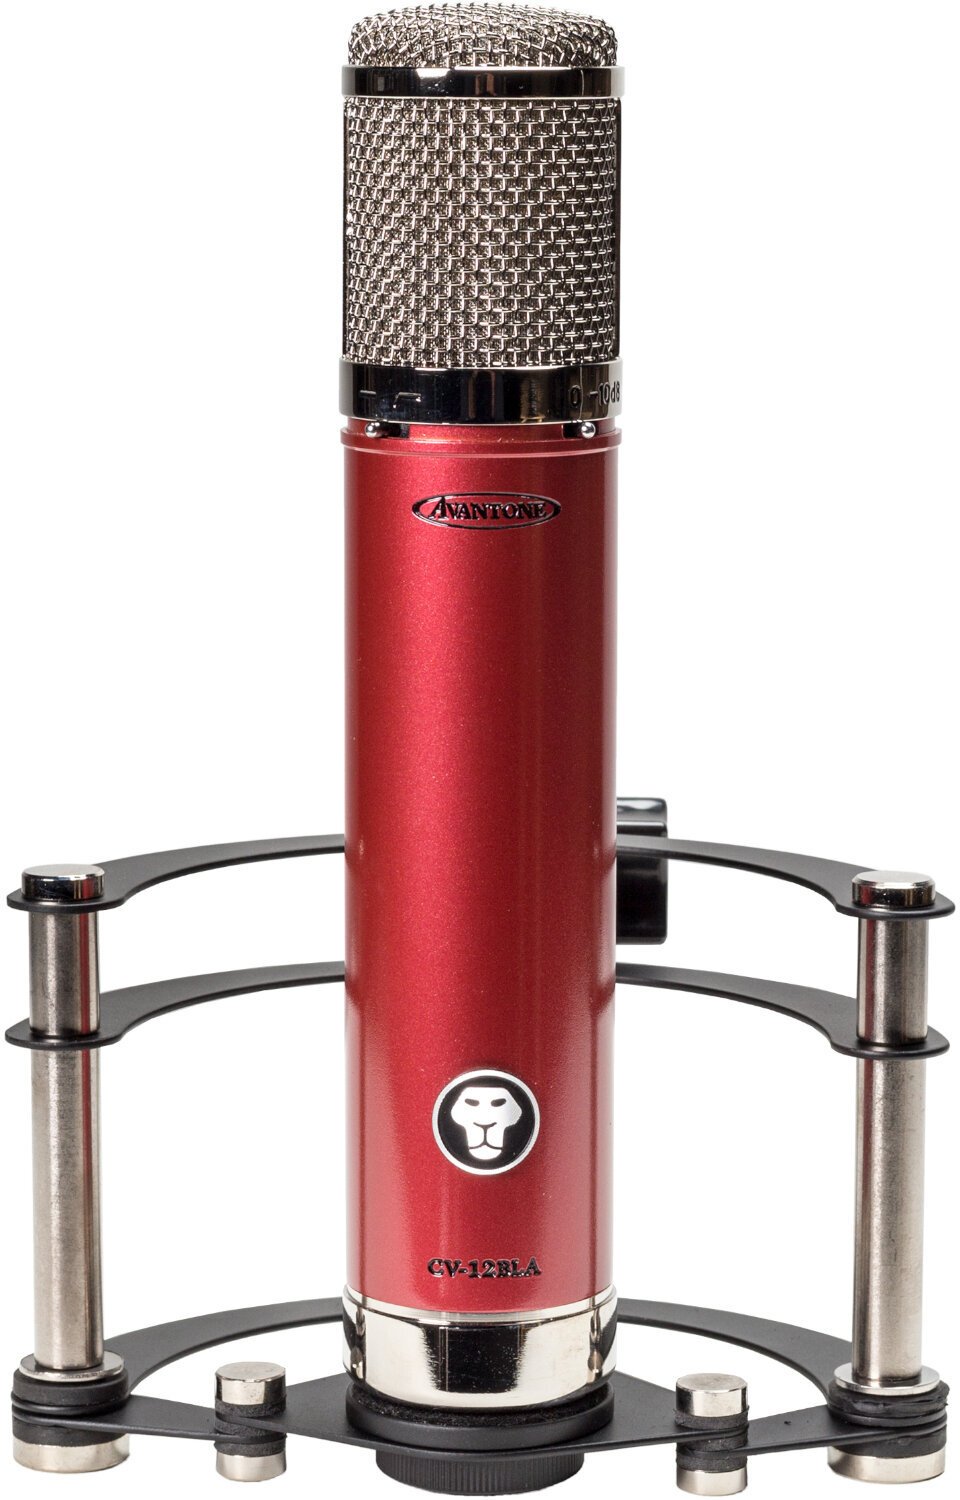 Mikrofon pojemnosciowy studyjny Avantone Pro CV-12BLA Mikrofon pojemnosciowy studyjny